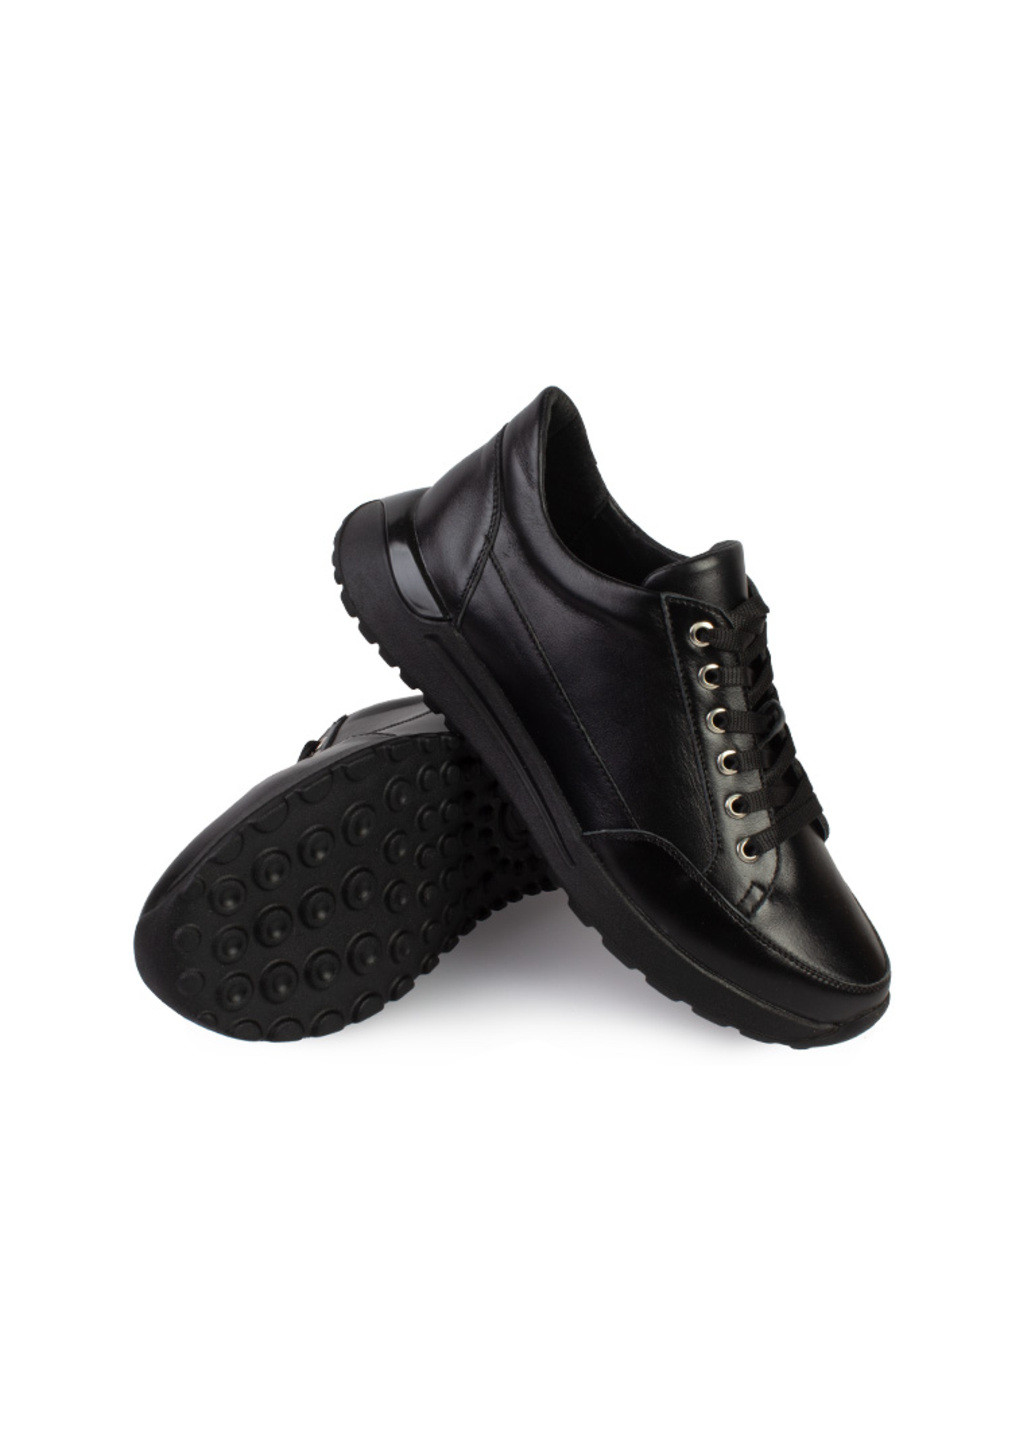 Чорні осінні кросівки жіночі бренду 8200335_(1) ModaMilano